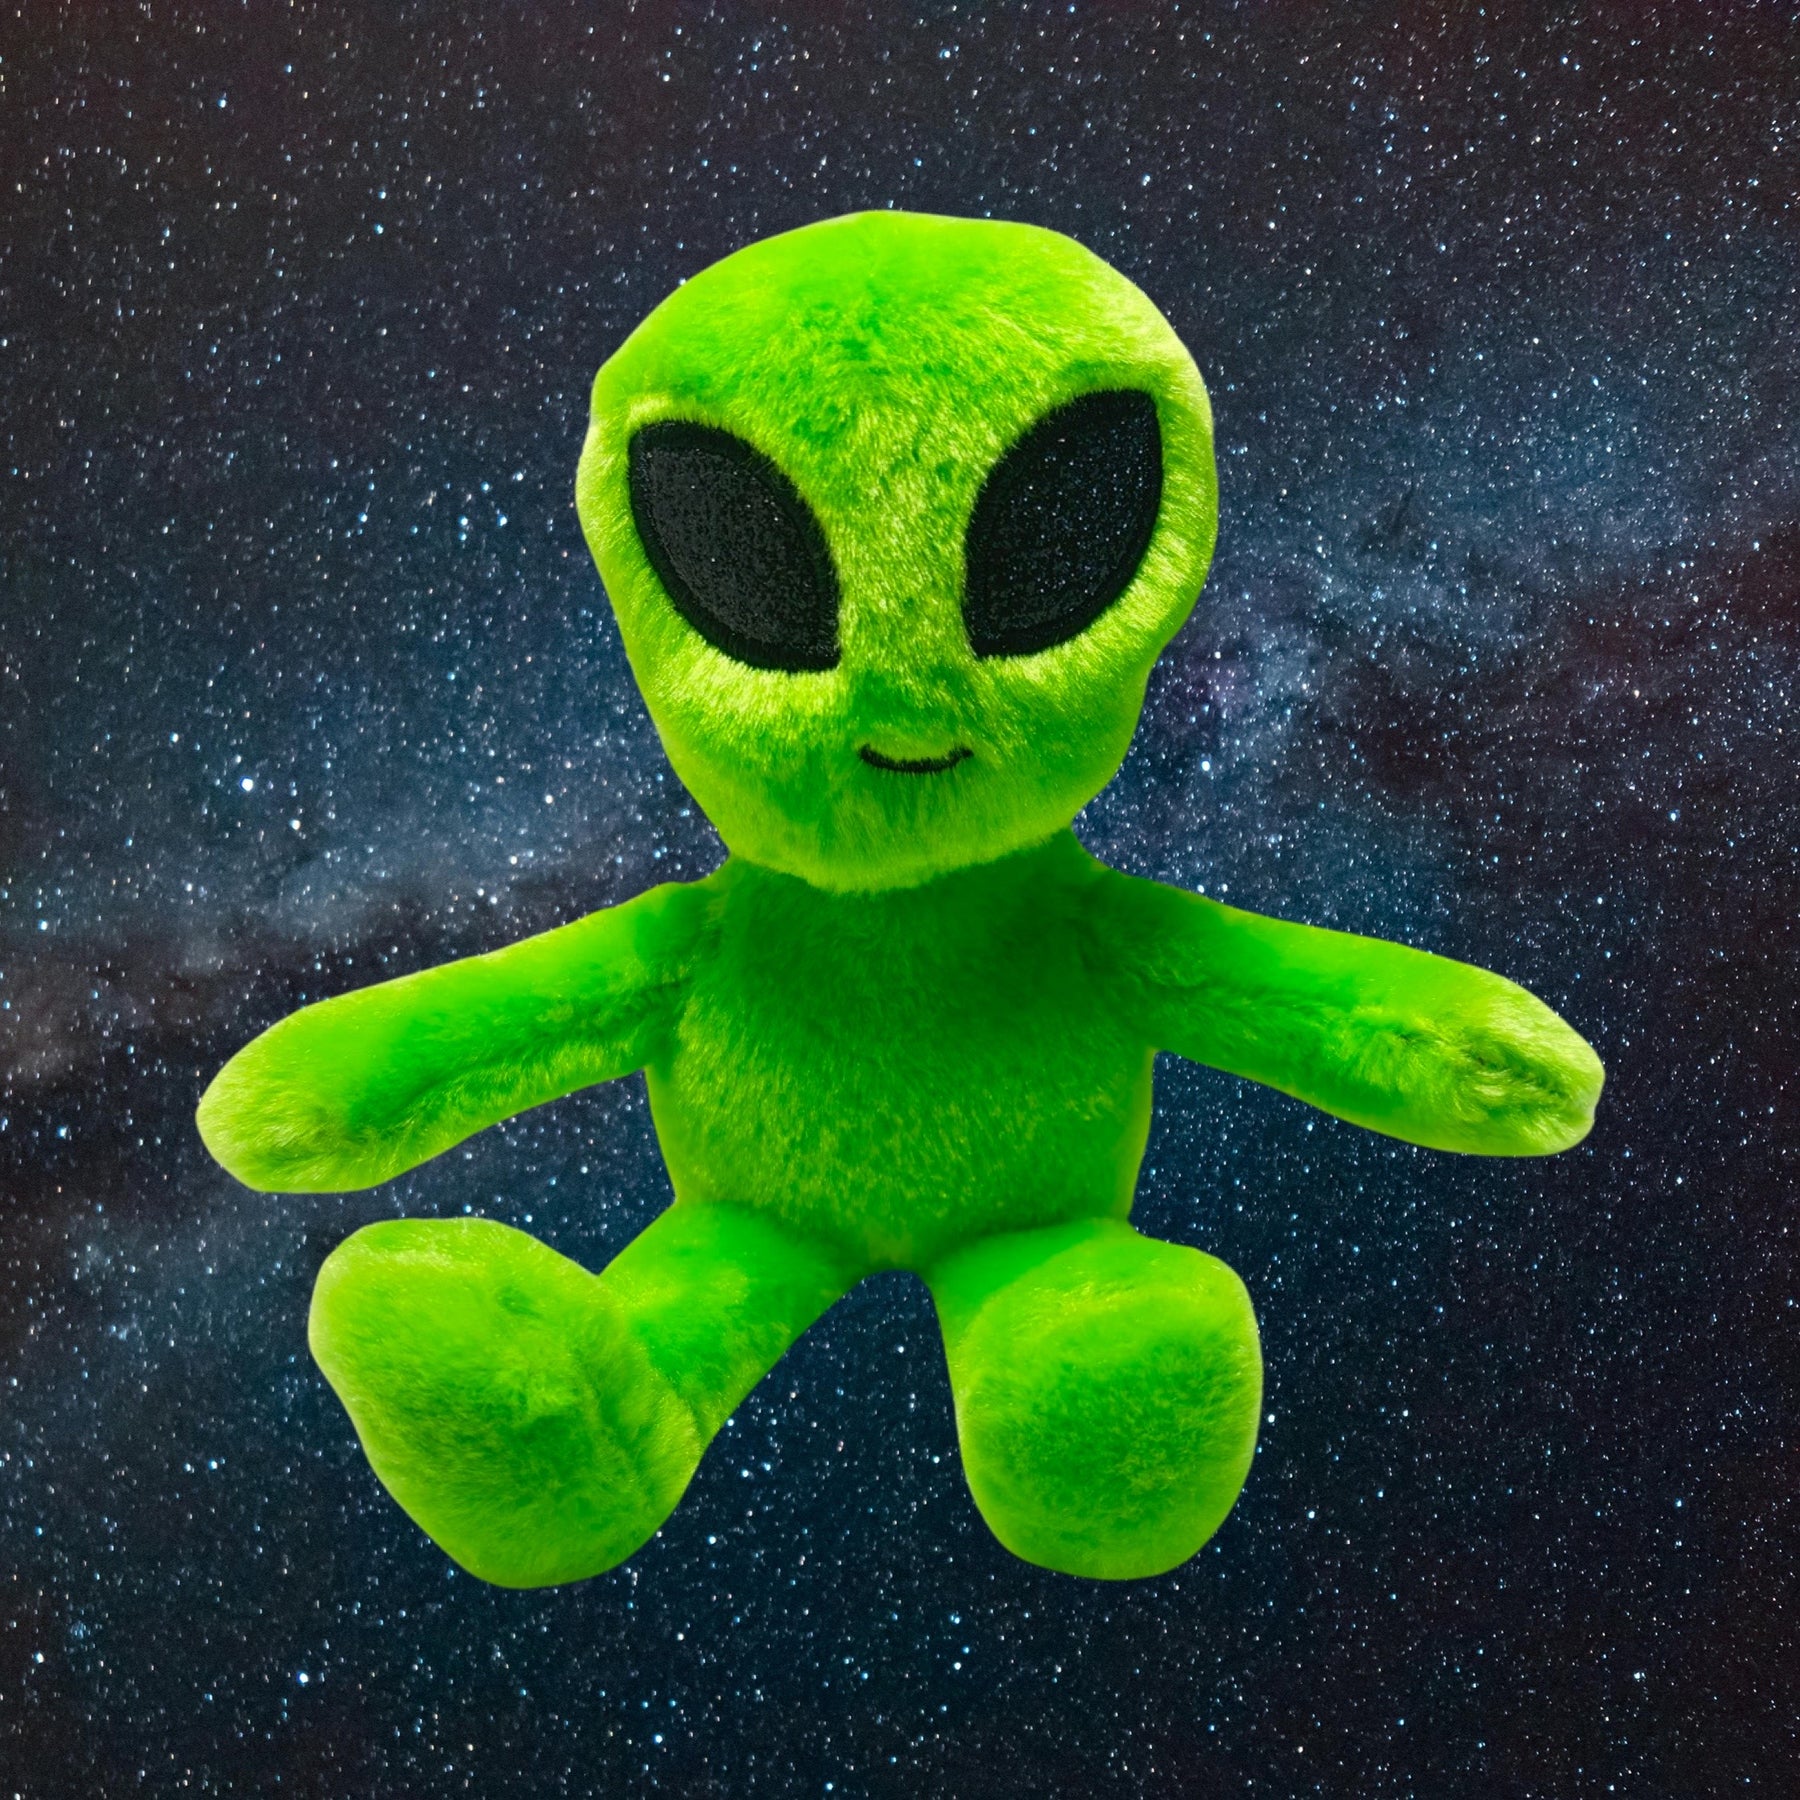 5" Wishpets Alien Toy Mini Plush Stuffed Alien w/Clip for Backpack